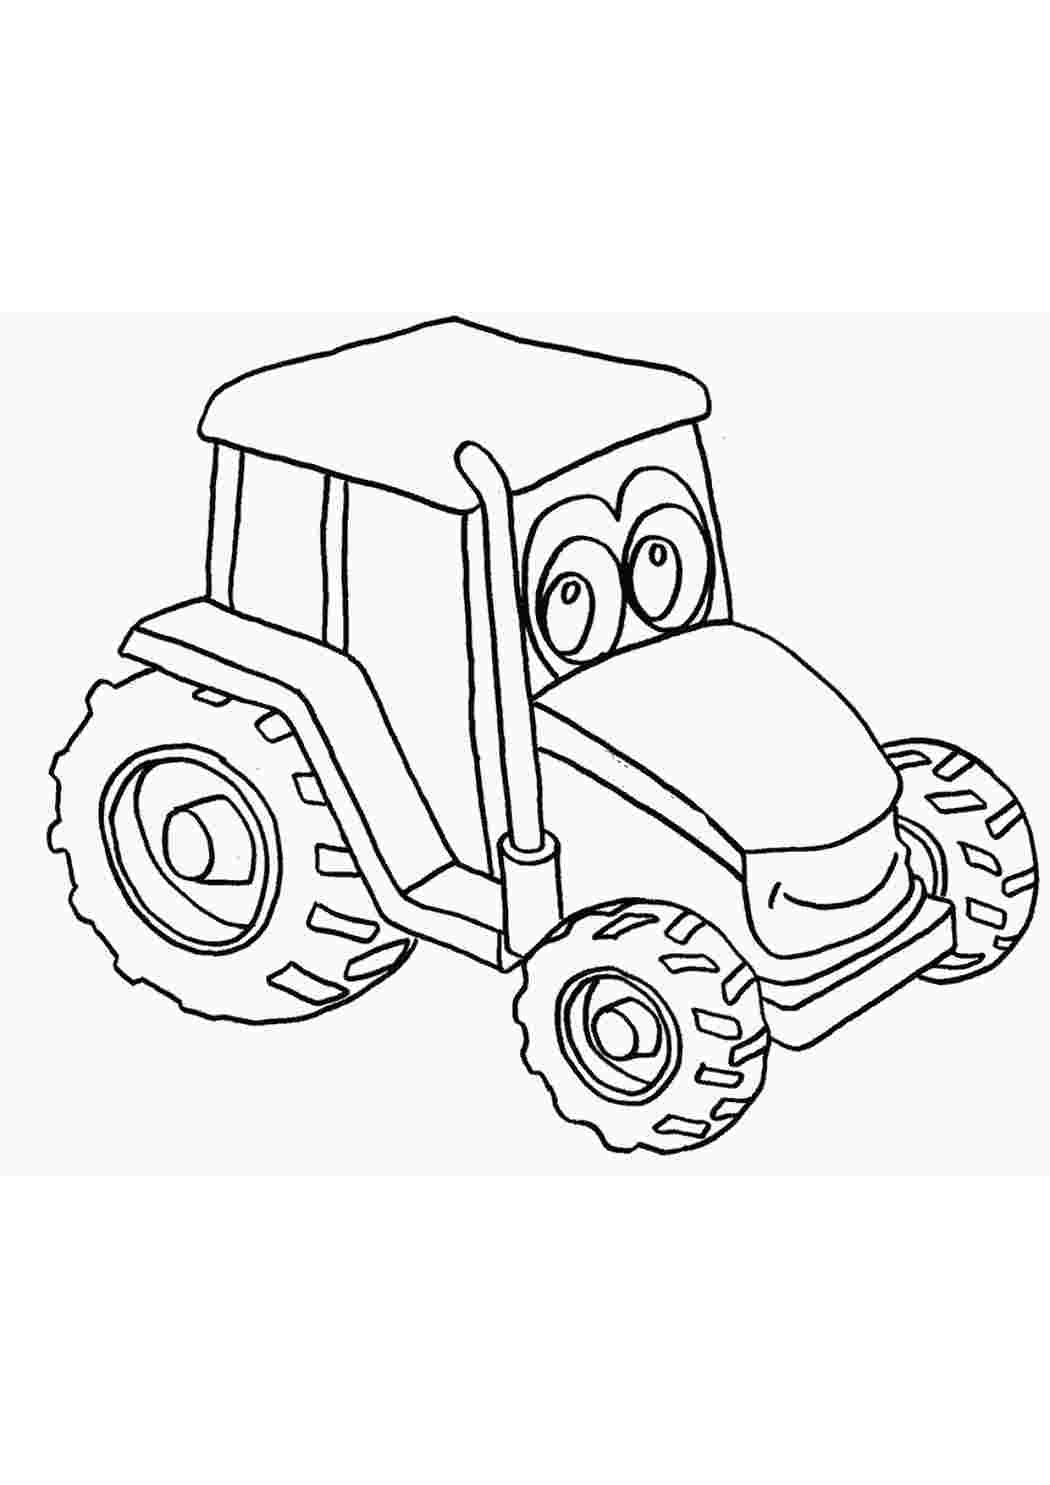 Трактор раскраска для детей 6 7 лет. Раскраска трактор. Раскраски для мальчиков трактор. Трактор для раскрашивания детям. Раскраски для мальчиков трактор 3 года.